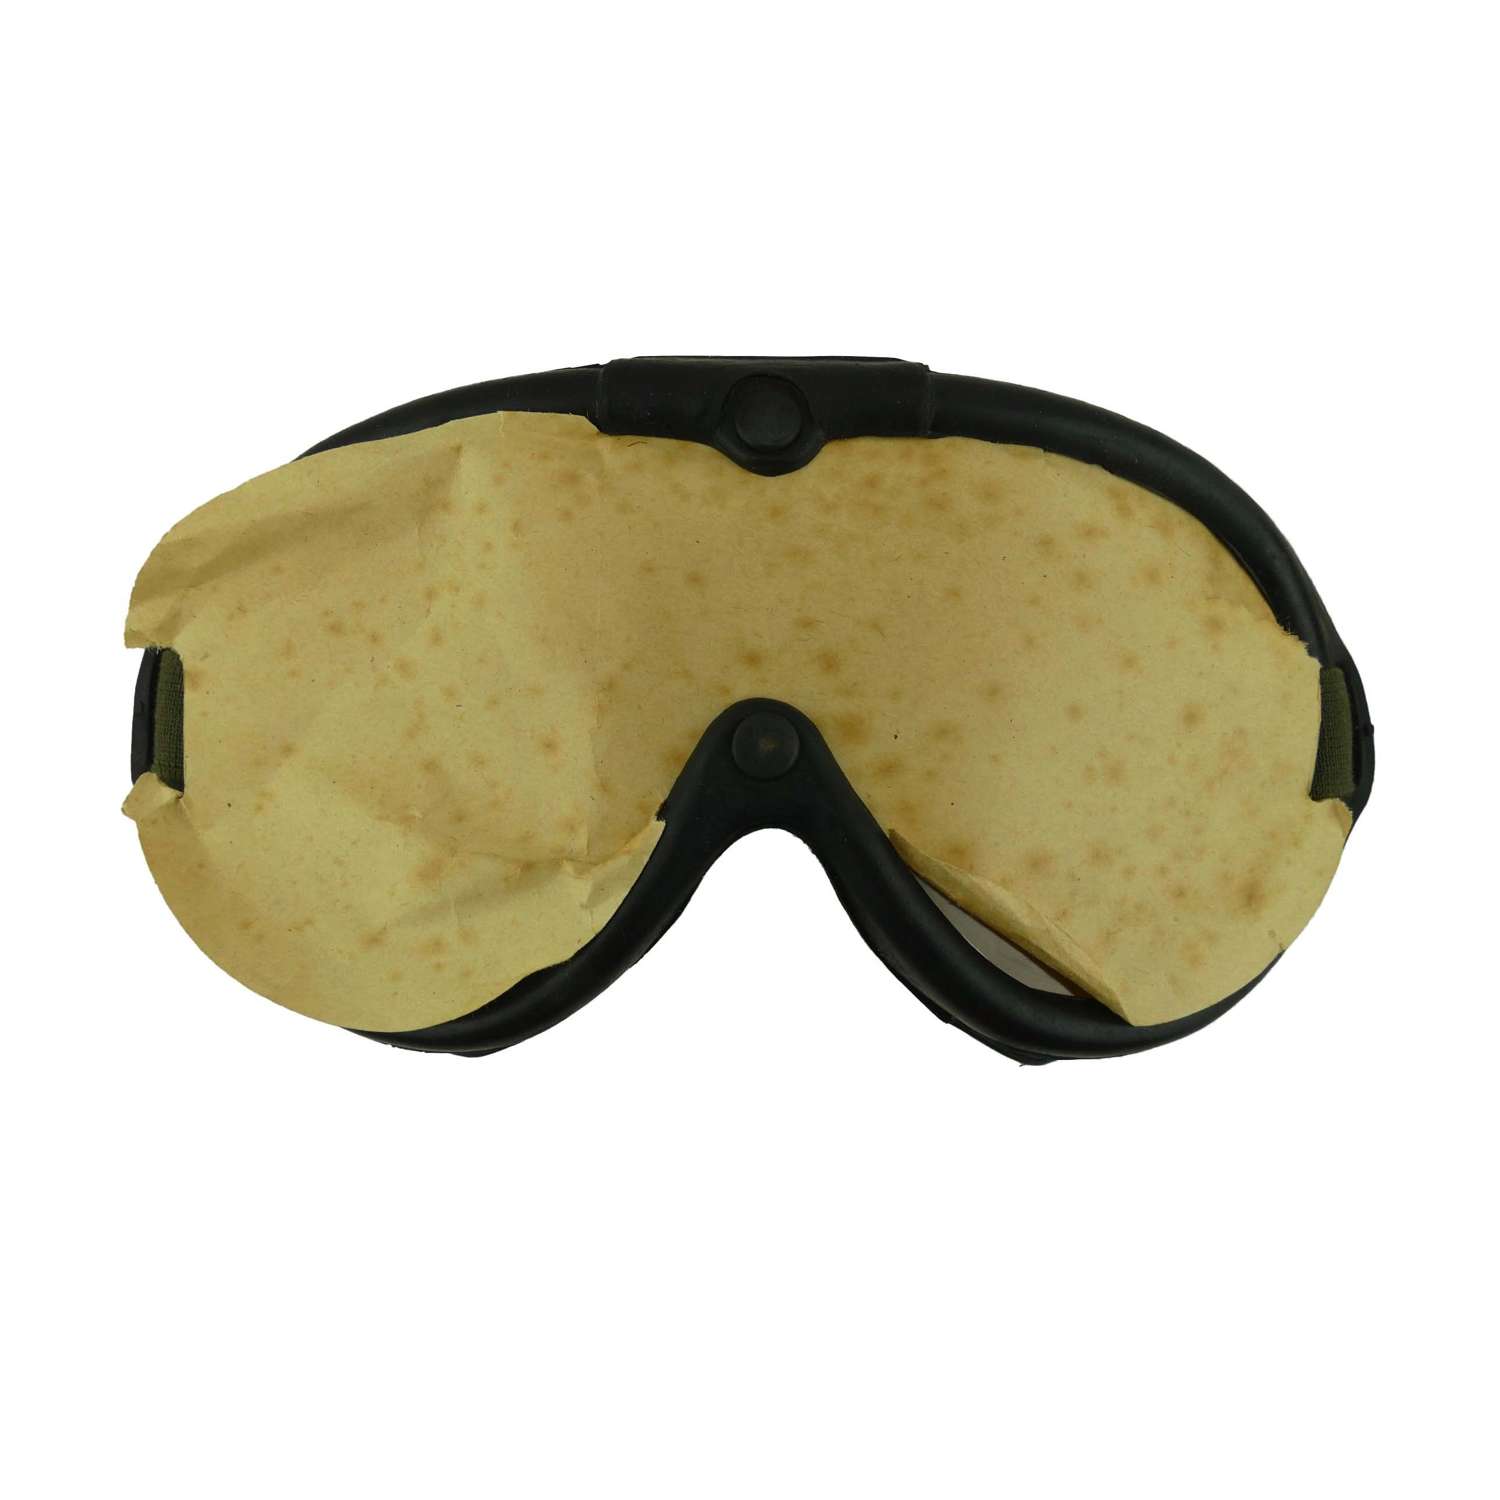 US M-1944 goggles, cased